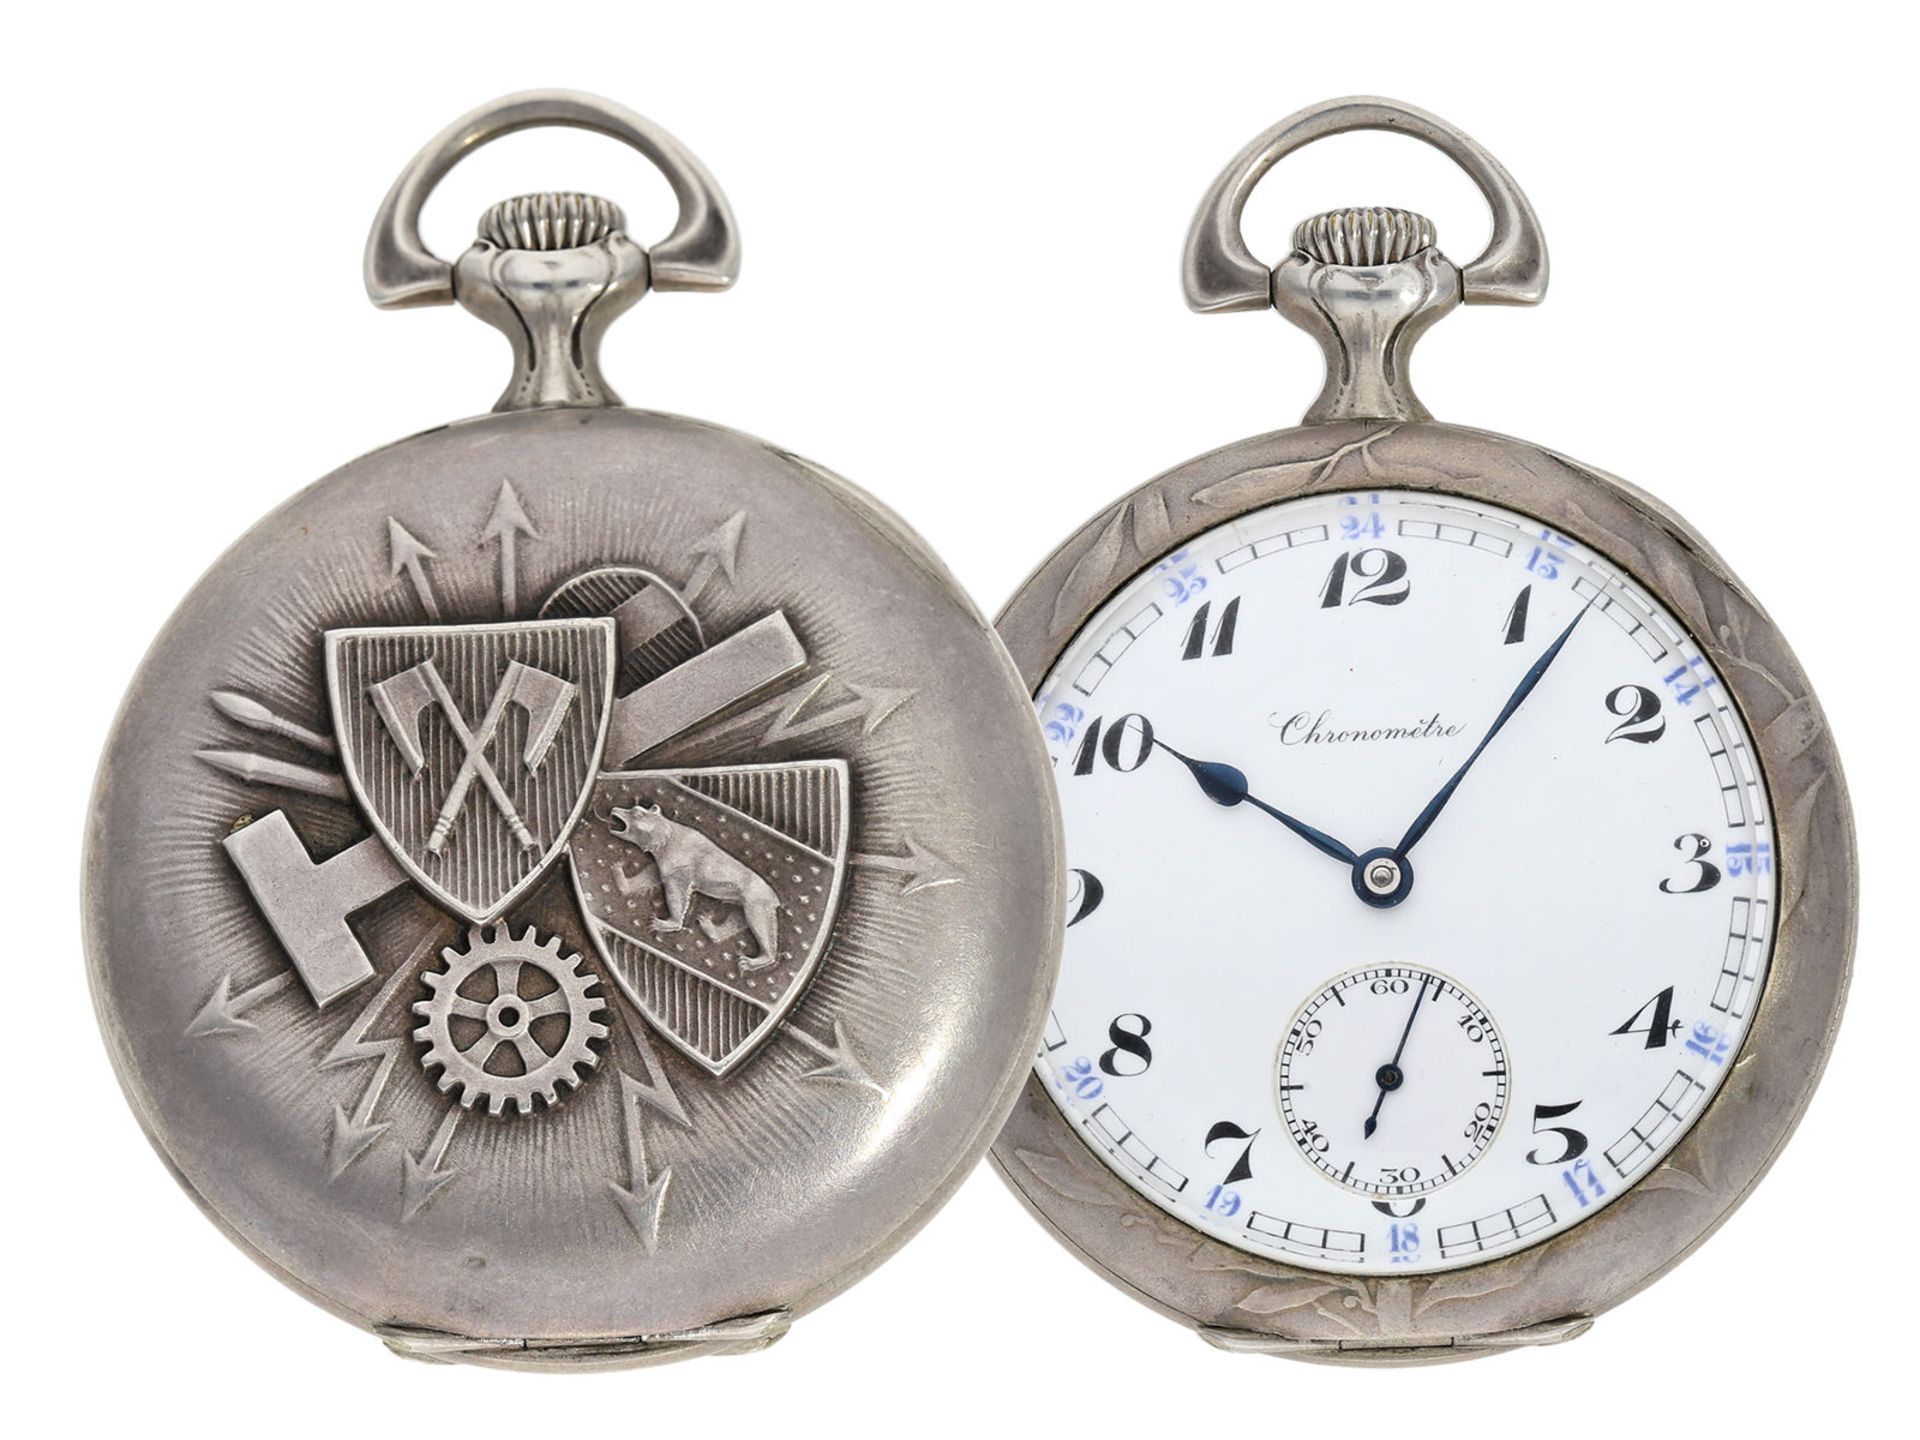 Taschenuhr: einzigartiges Chronometer mit Jugendstil-Reliefgehäuse, Schuluhr "Technicum Cantona